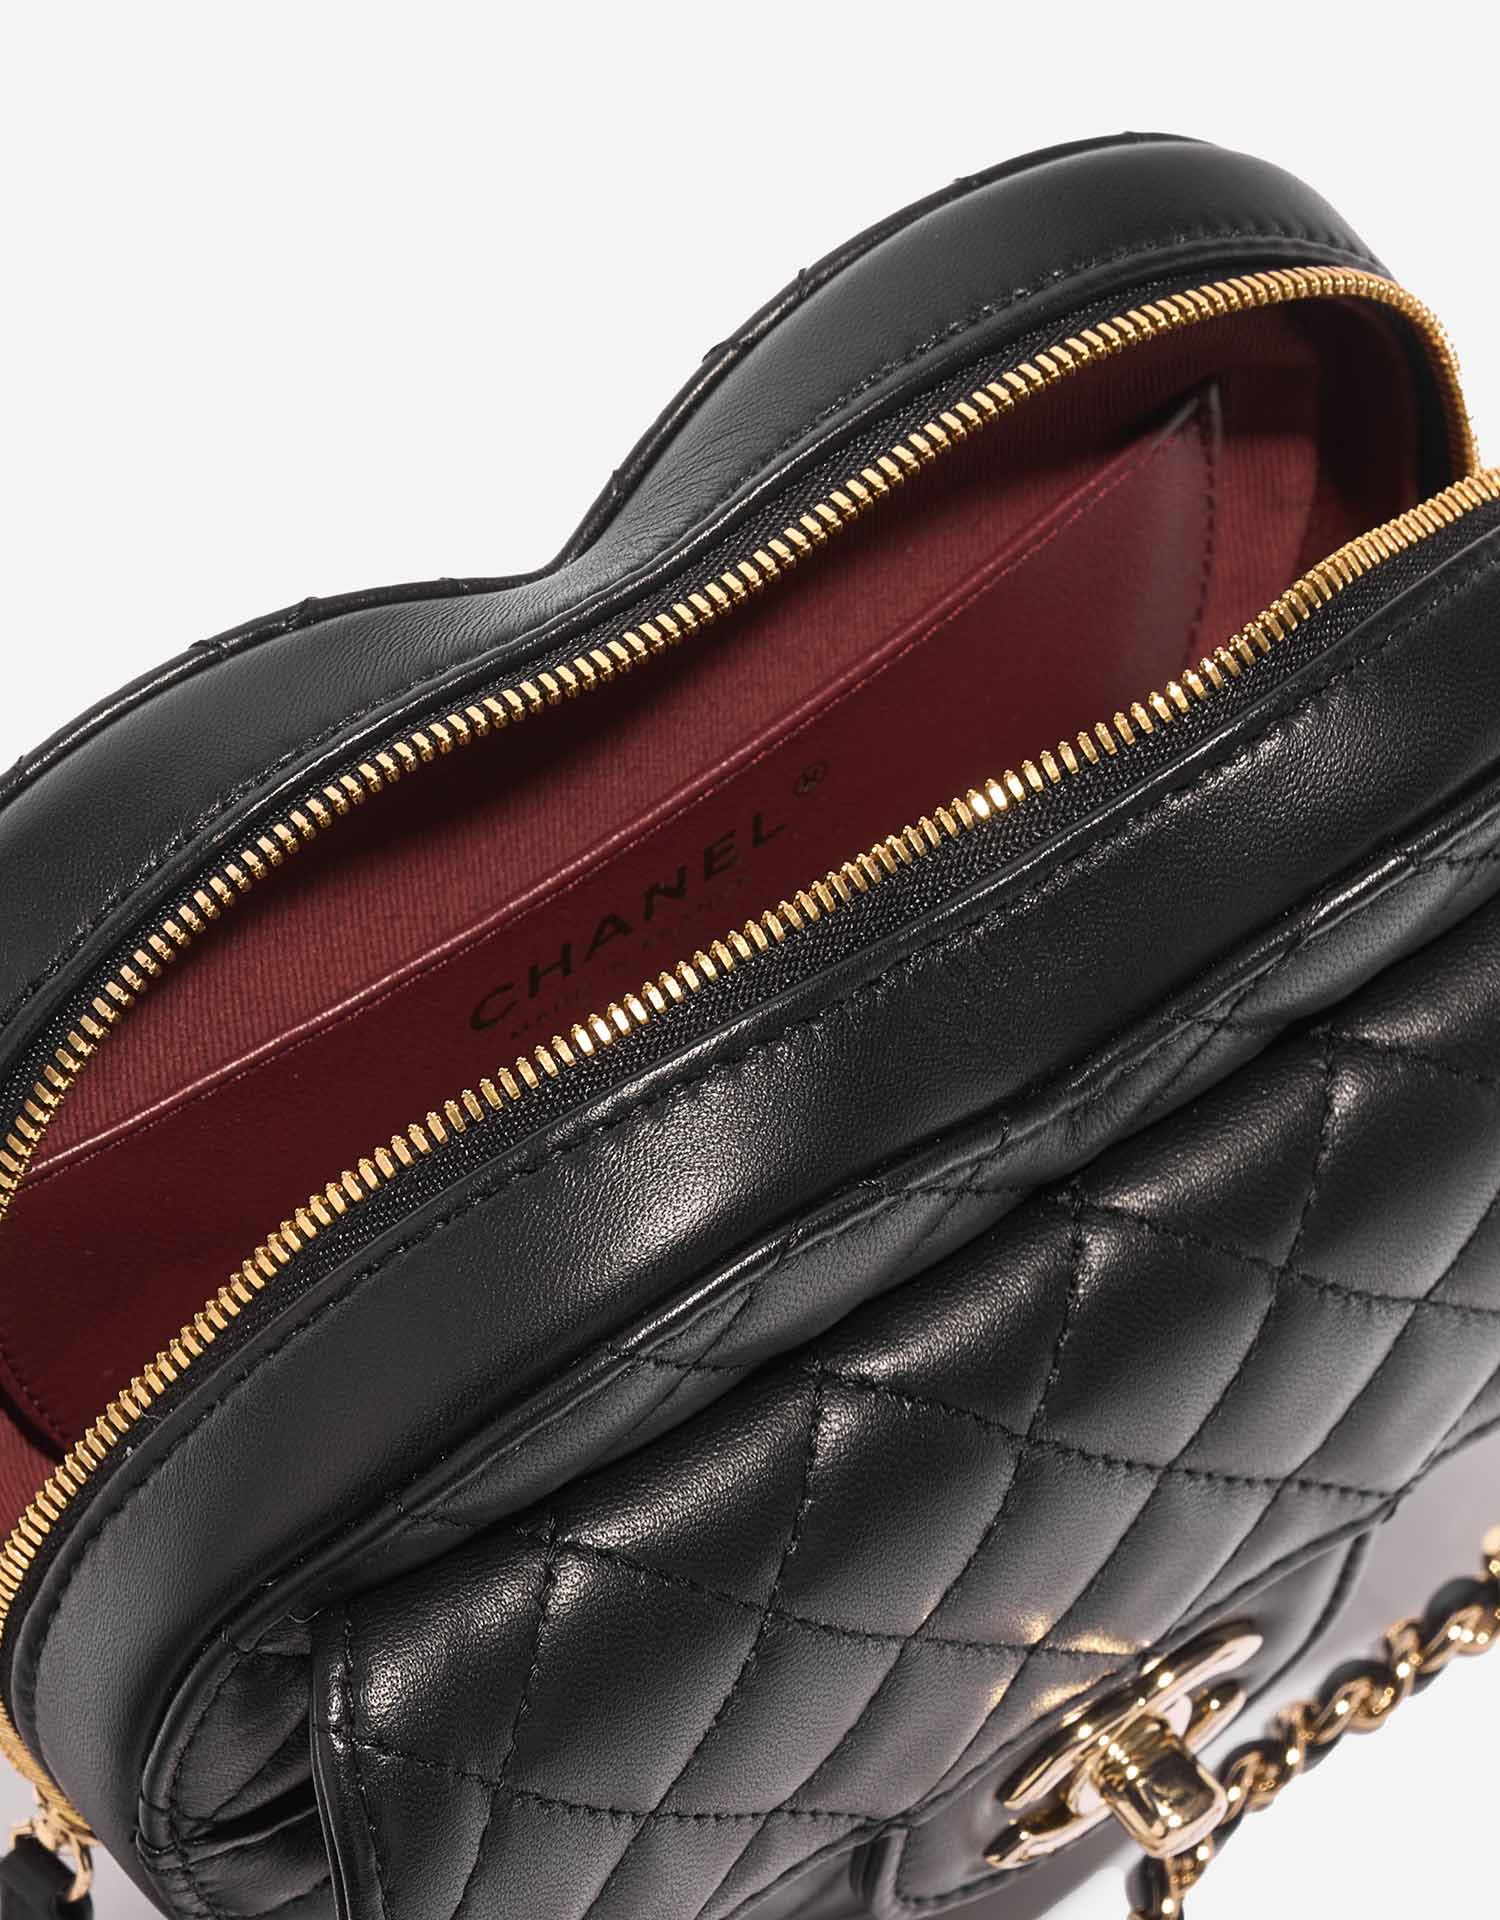 Chanel Timeless Heart Medium Black Inside | Verkaufen Sie Ihre Designer-Tasche auf Saclab.com